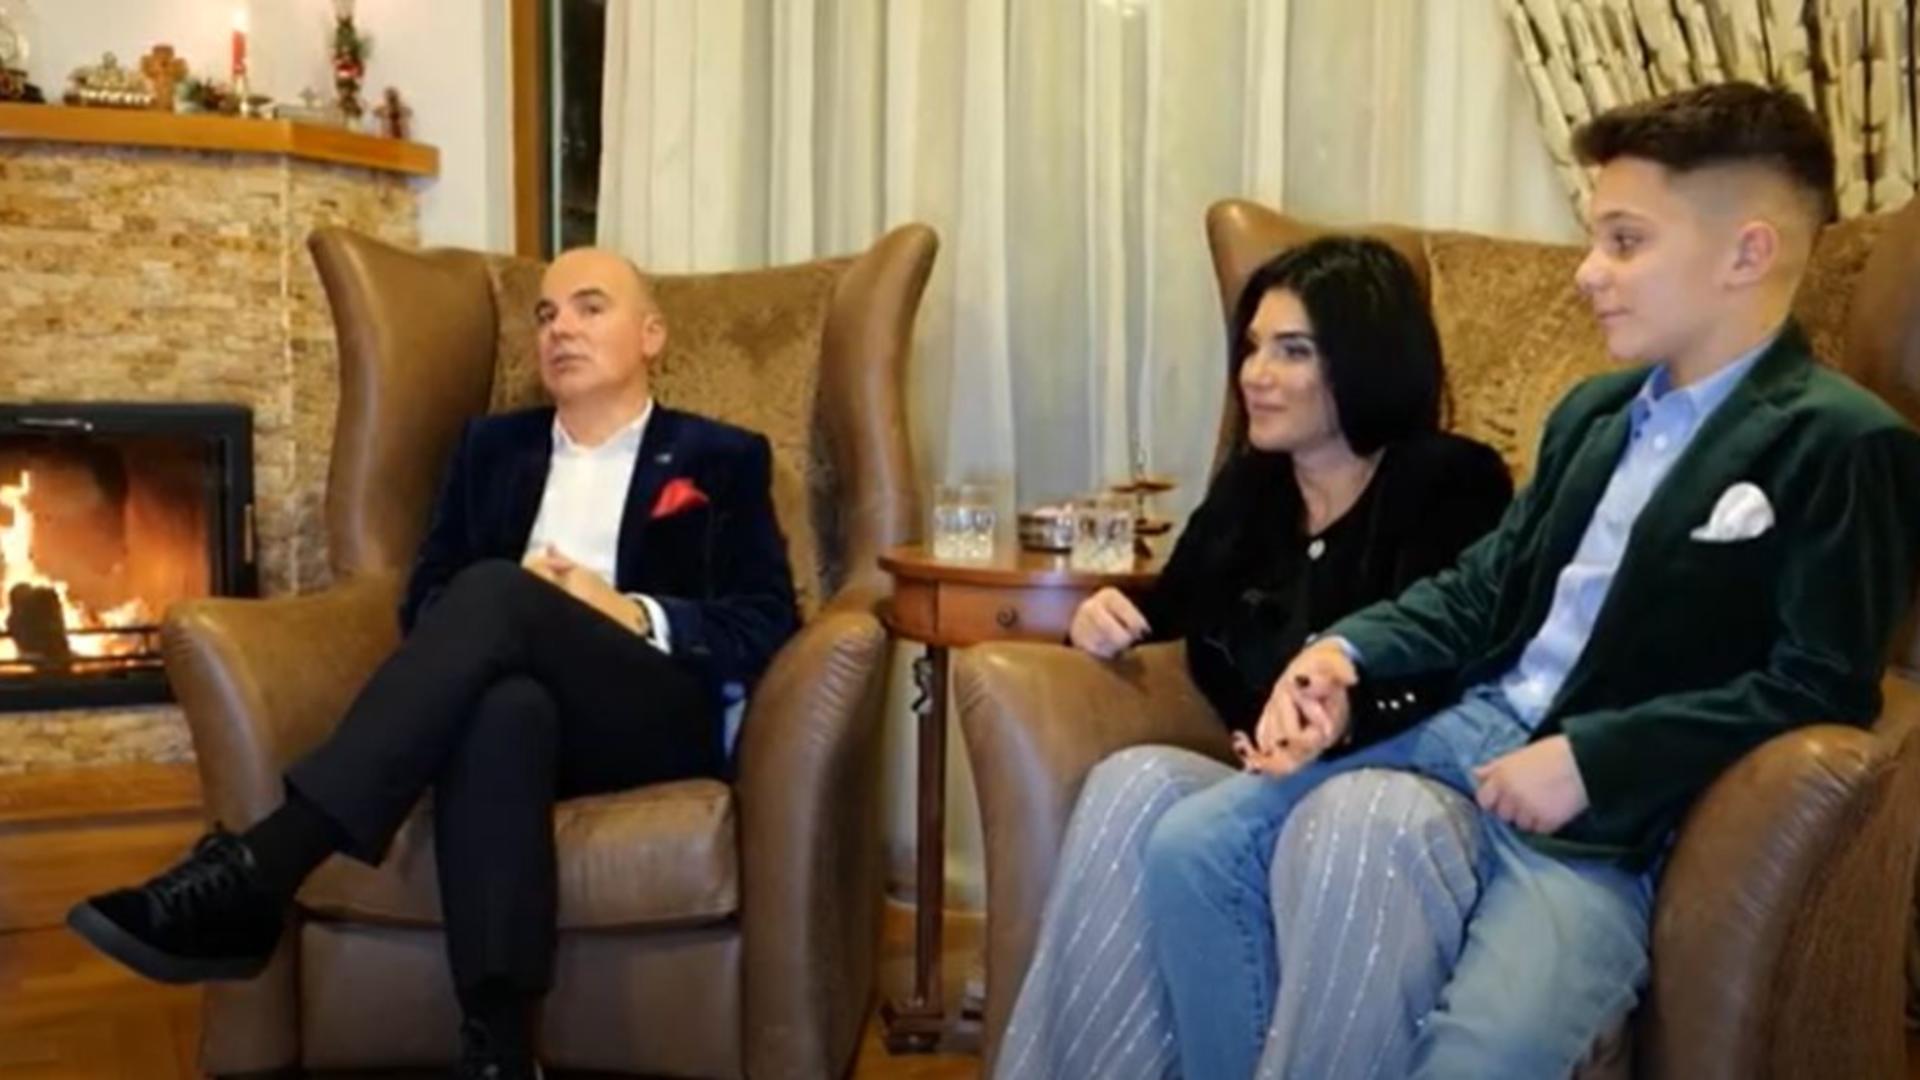 Interviu inedit de Sărbători cu Rareș Bogdan și familia sa – Povestea de dragoste a politicianului – Cum și-a cunoscut soția – VIDEO